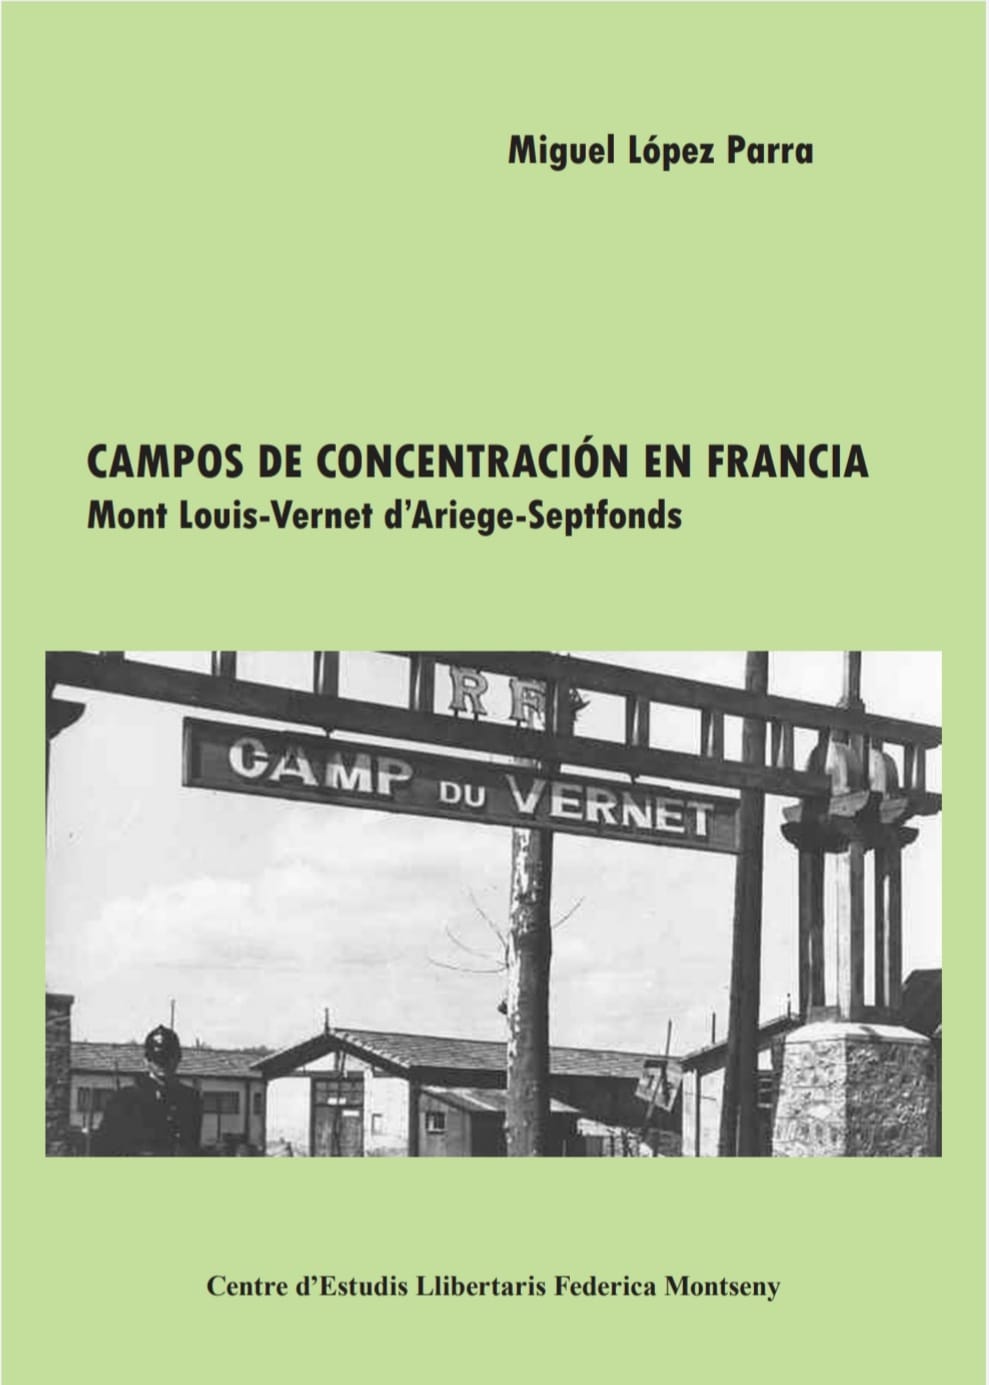 CAMPOS DE CONCENTRACIÓN EN FRANCIA - Miguel López Parra